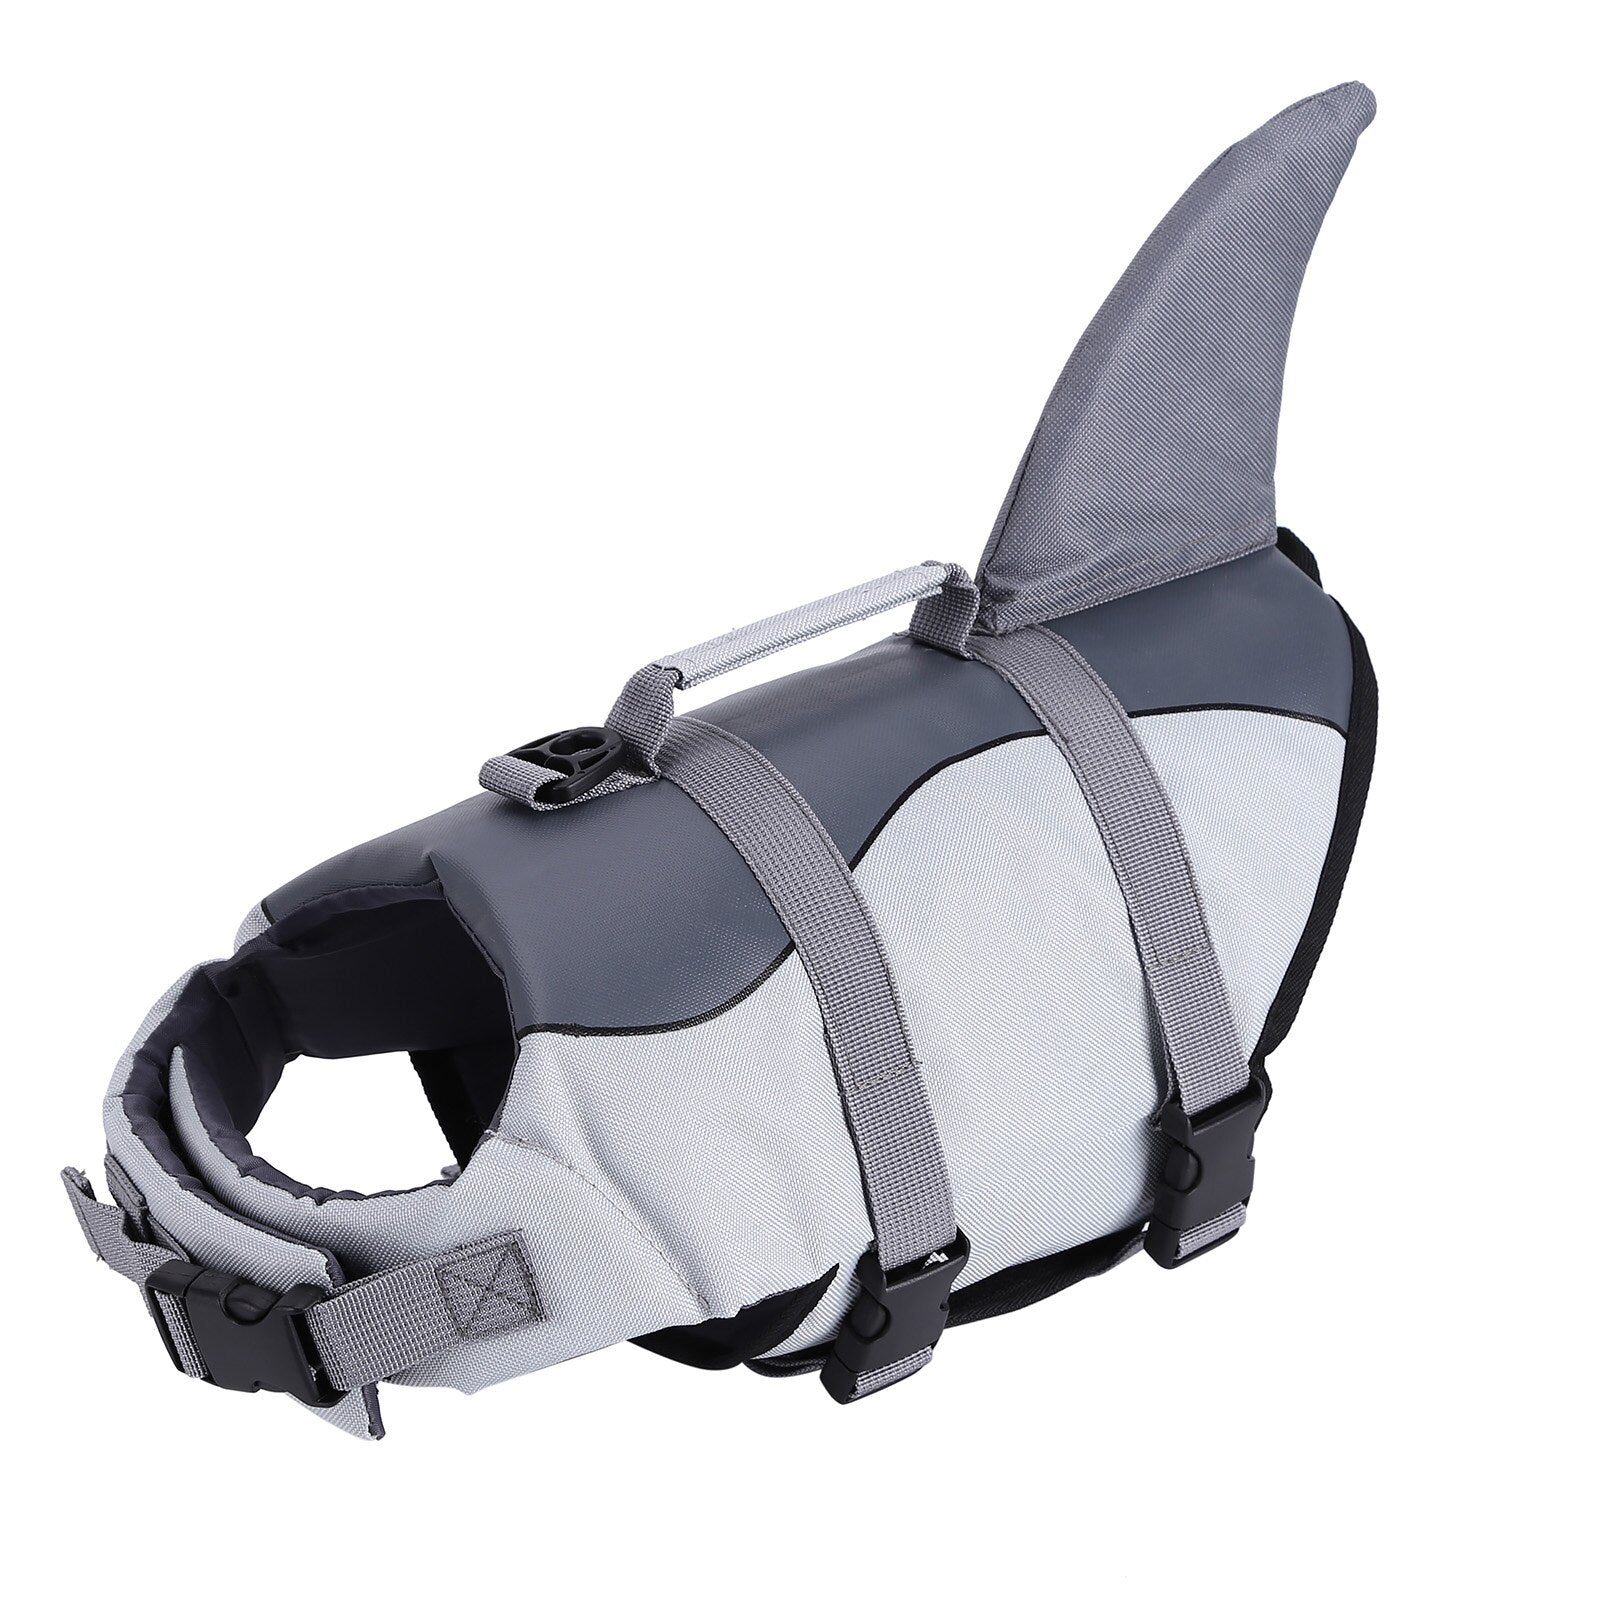 Adjustable Shark Vests For Dog - Pets and More